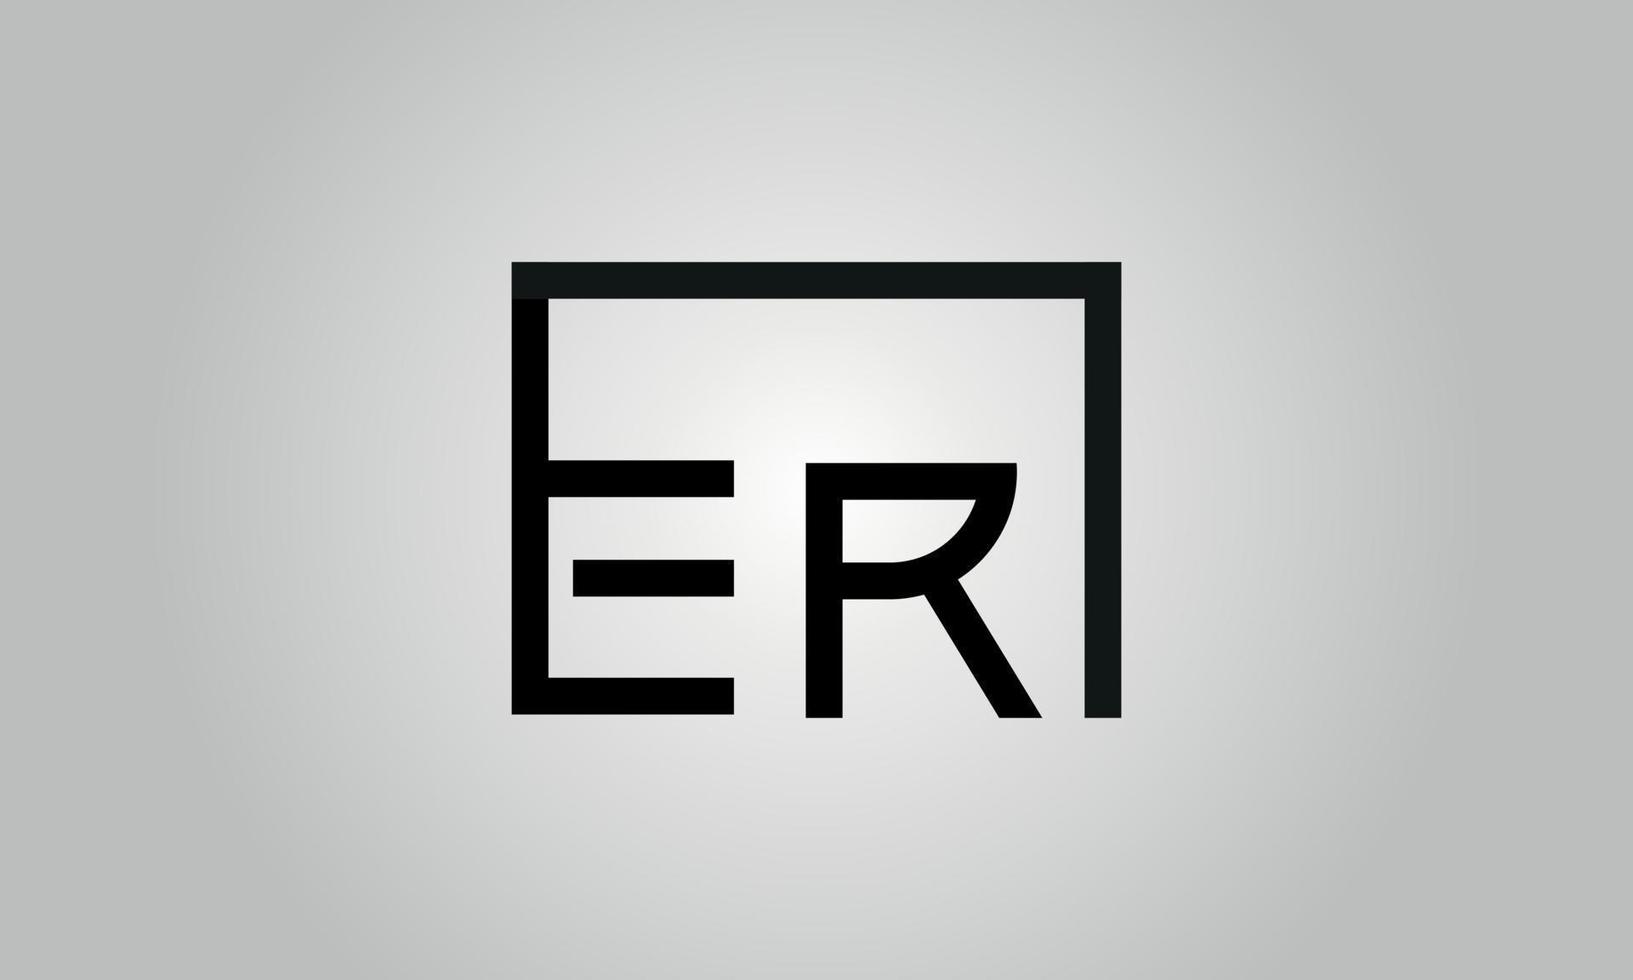 brief eh logo ontwerp. eh logo met plein vorm in zwart kleuren vector vrij vector sjabloon.